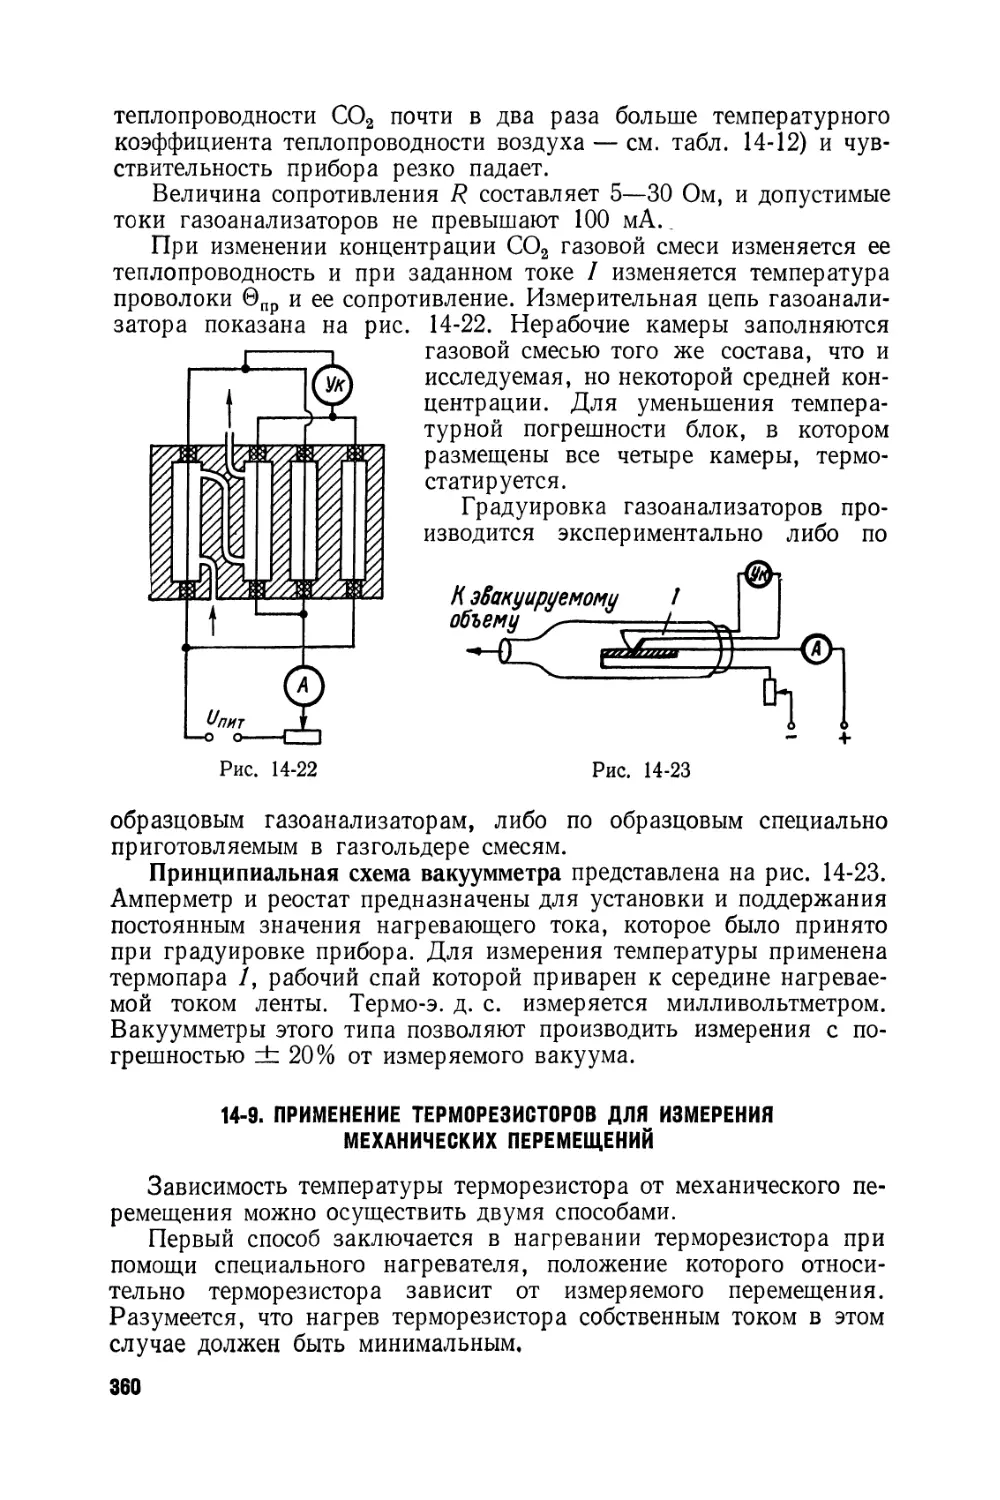 9. Применение терморезисторов для измерения механических перемещений